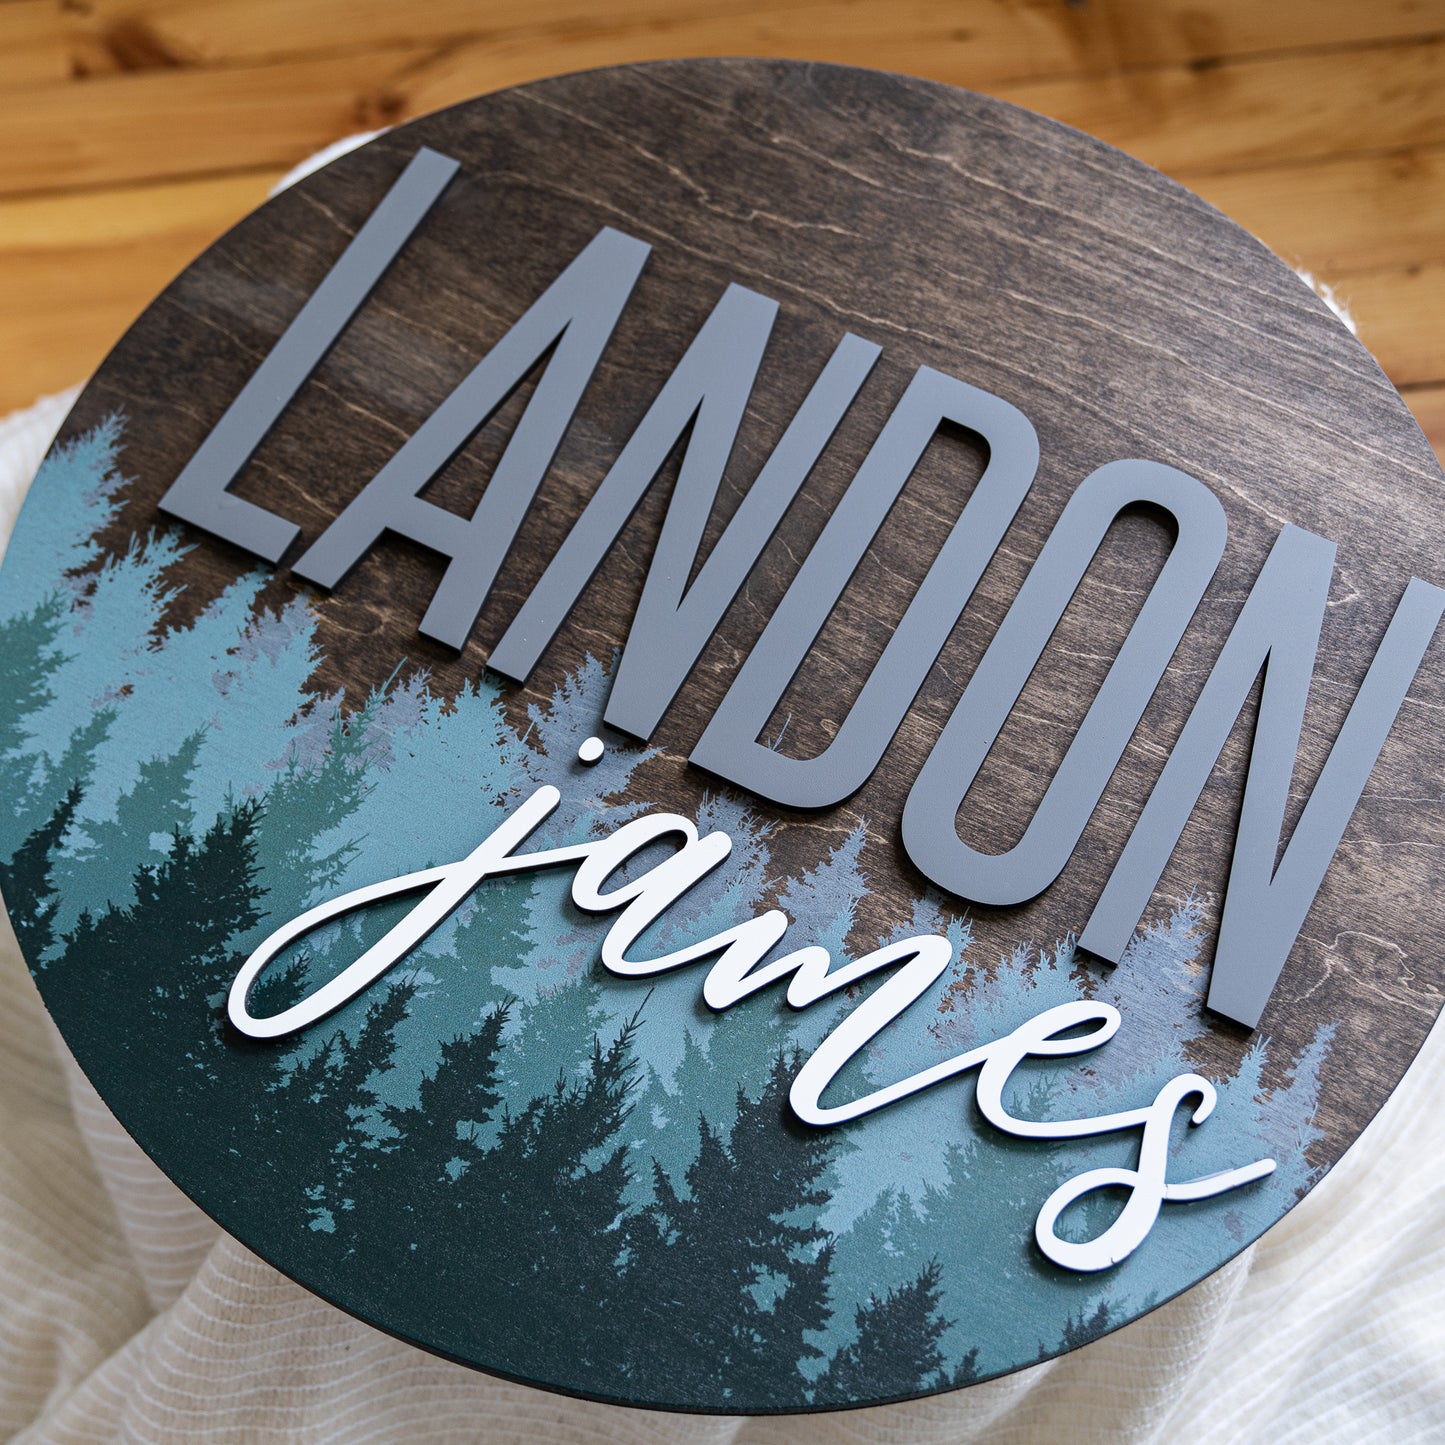 Landon James Printed Pine Tree Round Name Sign